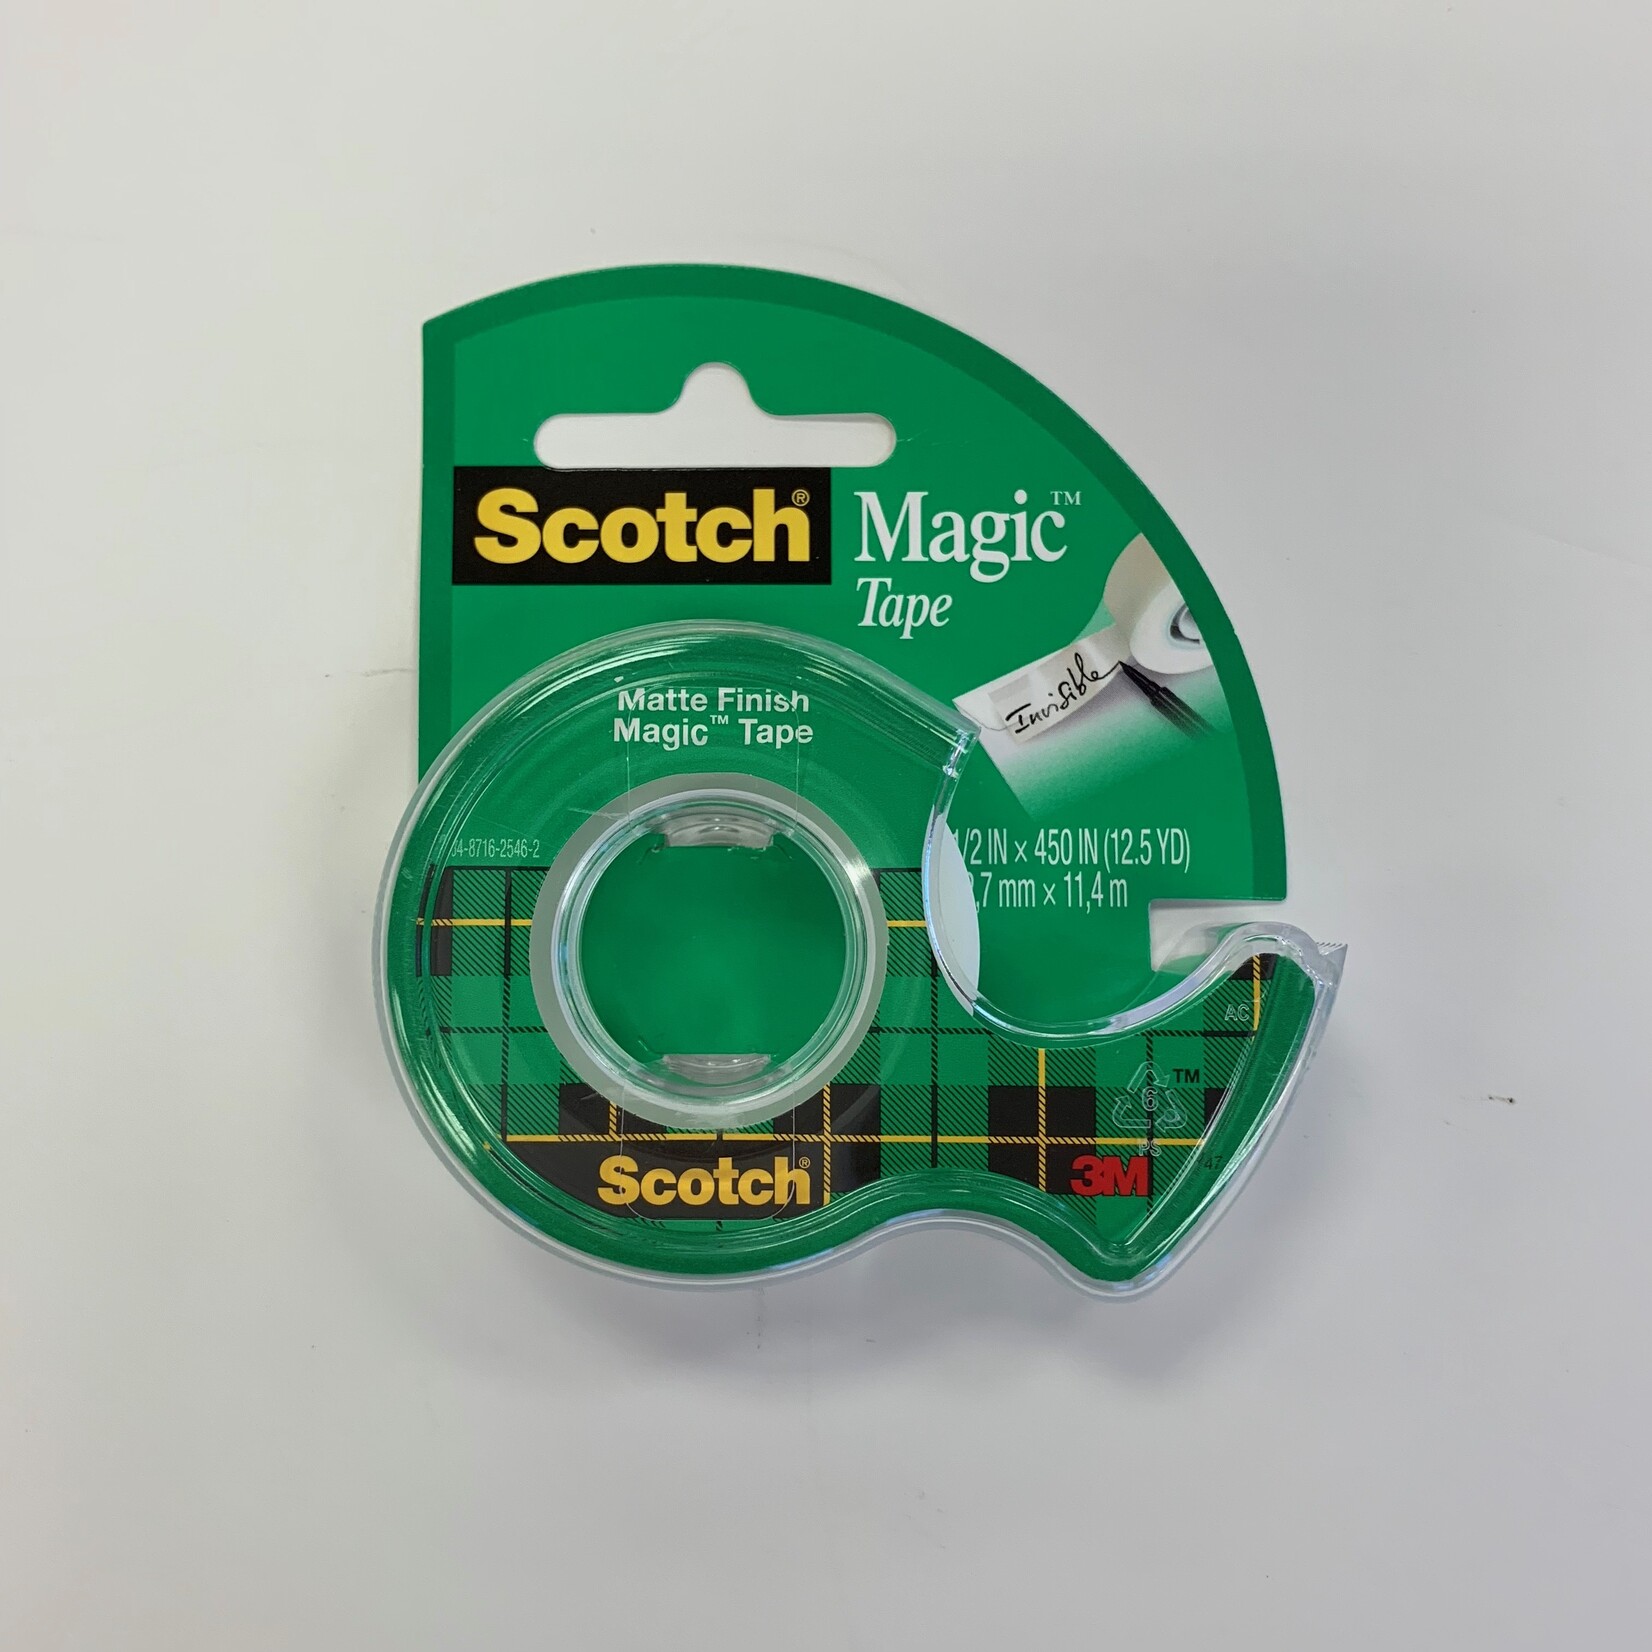 Scotch Scotch Magic Tape 1/2 in.x 450in. (12.5YD)